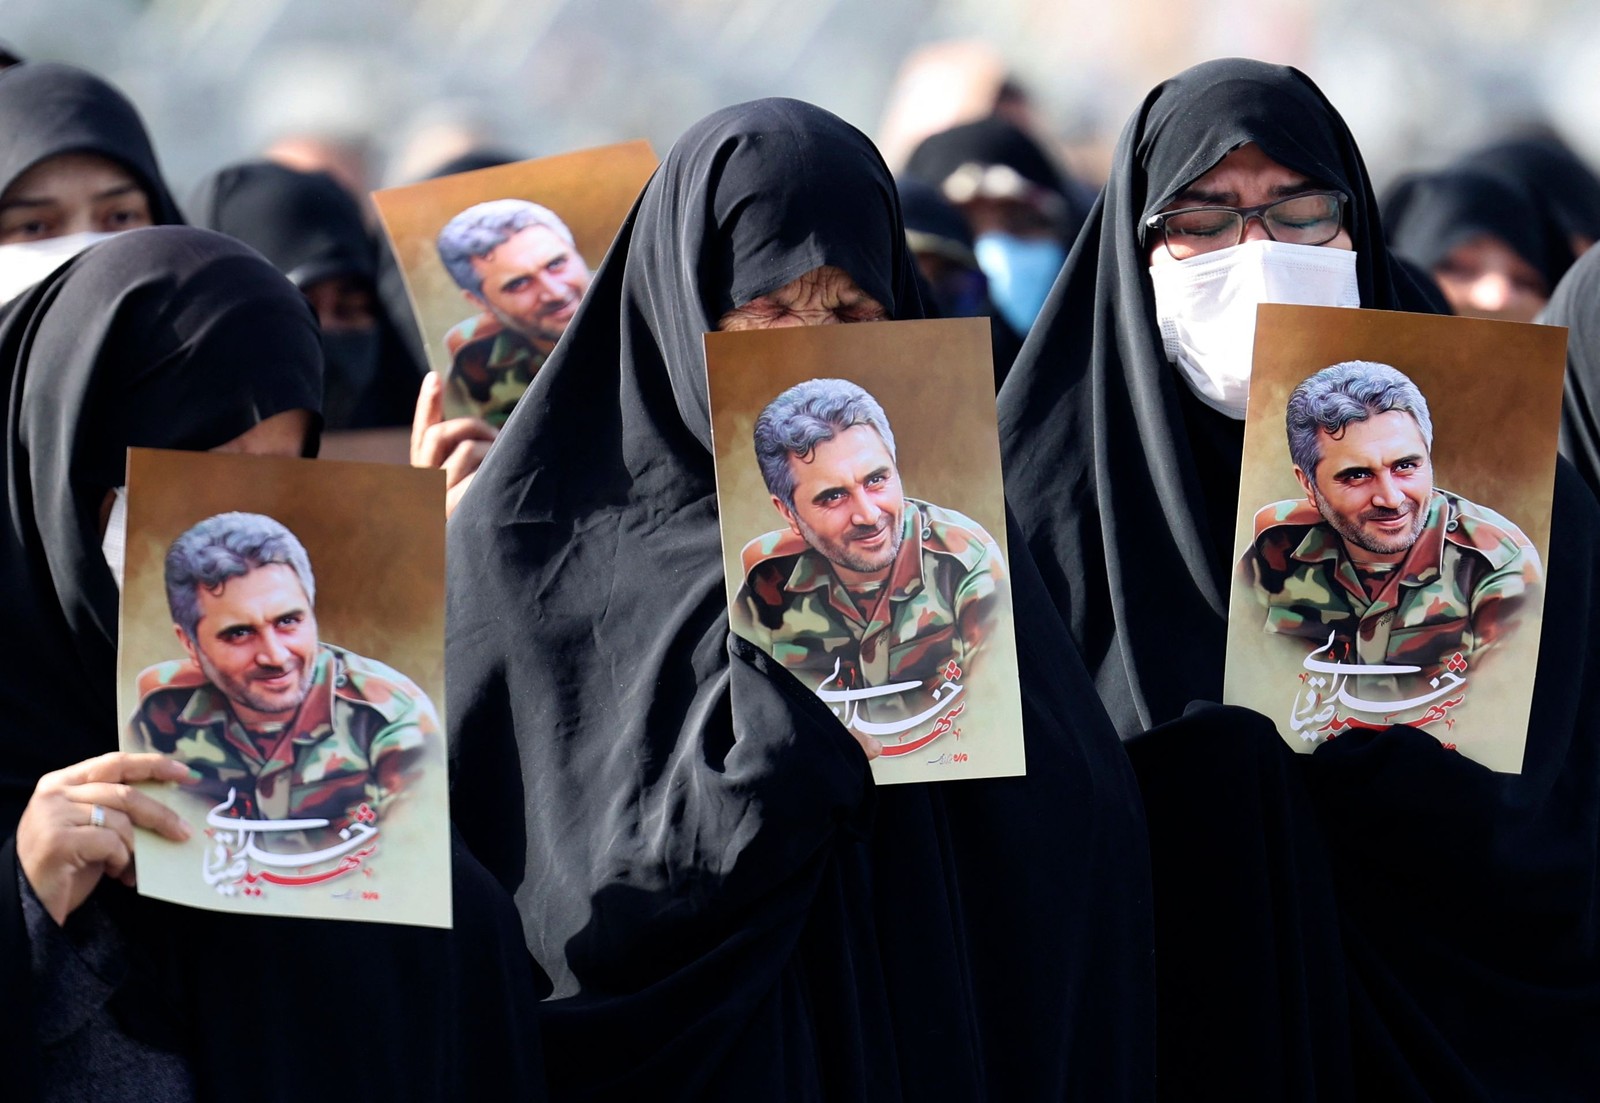 Mulheres iranianas levantam retratos do coronel Sayyad Khodai da Guarda Revolucionária durante seu cortejo fúnebre na praça Imam Hussein, na capital Teerã. Ele foi assassinado, e o Irã atribui o atentado a "elementos ligados à arrogância global" – termo da república islâmica para seu arqui-inimigo os Estados Unidos e aliados dos EUA, incluindo Israel  — Foto: ATTA KENARE / AFP